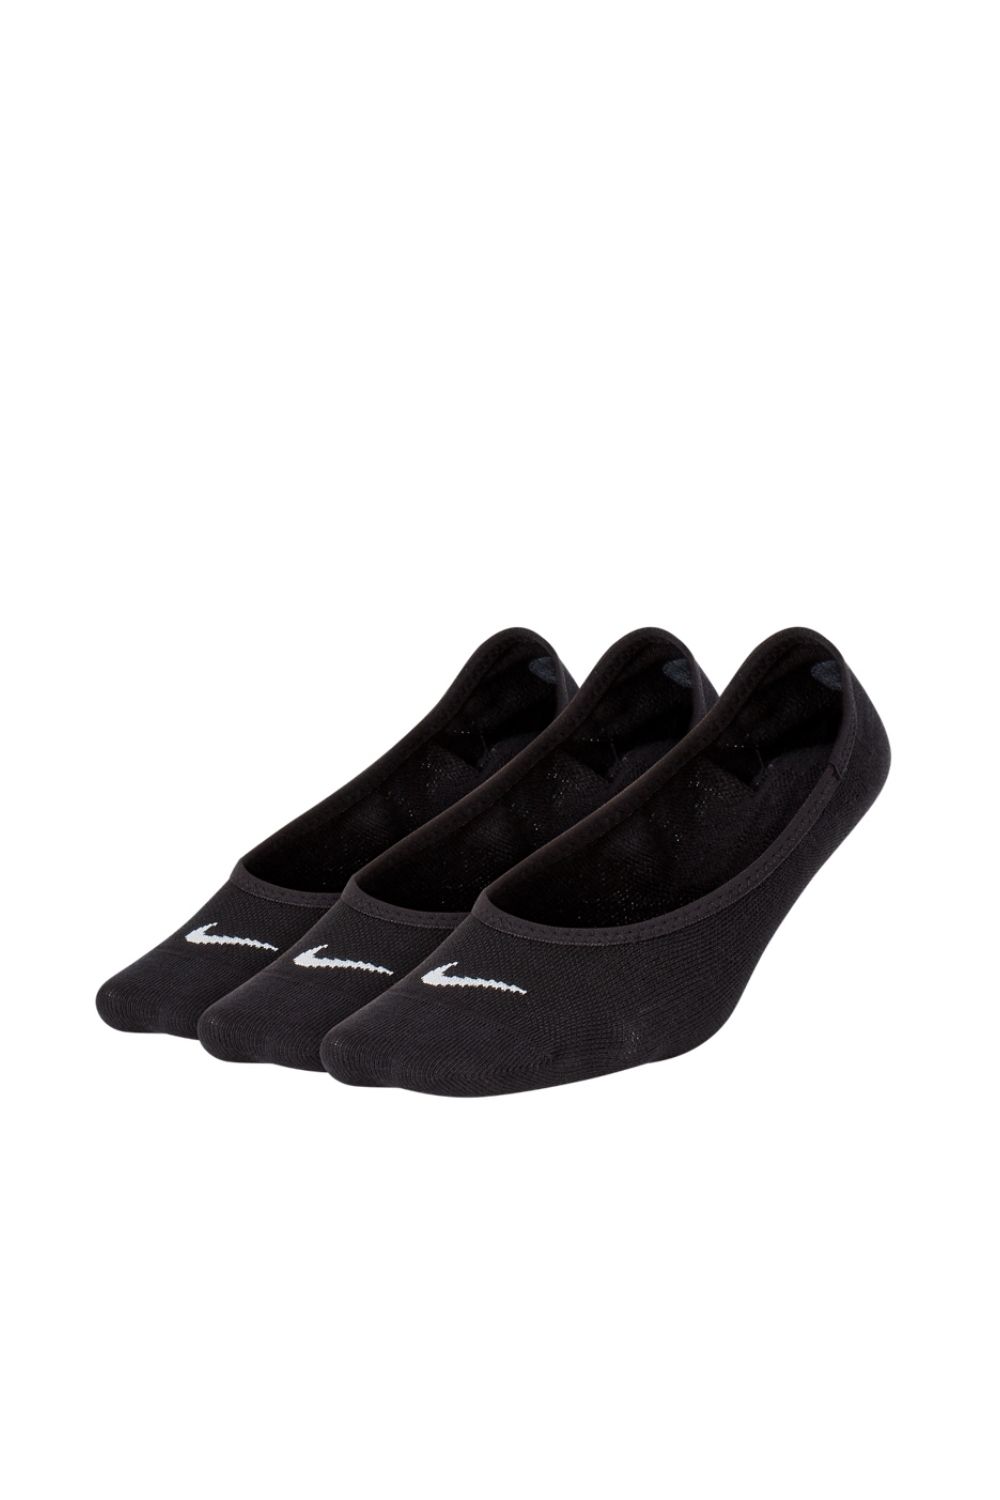 NIKE - Σετ γυναικείες κάλτσες 3 τμχ Nike Lightweight Footie Training Sock μαύρες Γυναικεία/Αξεσουάρ/Κάλτσες